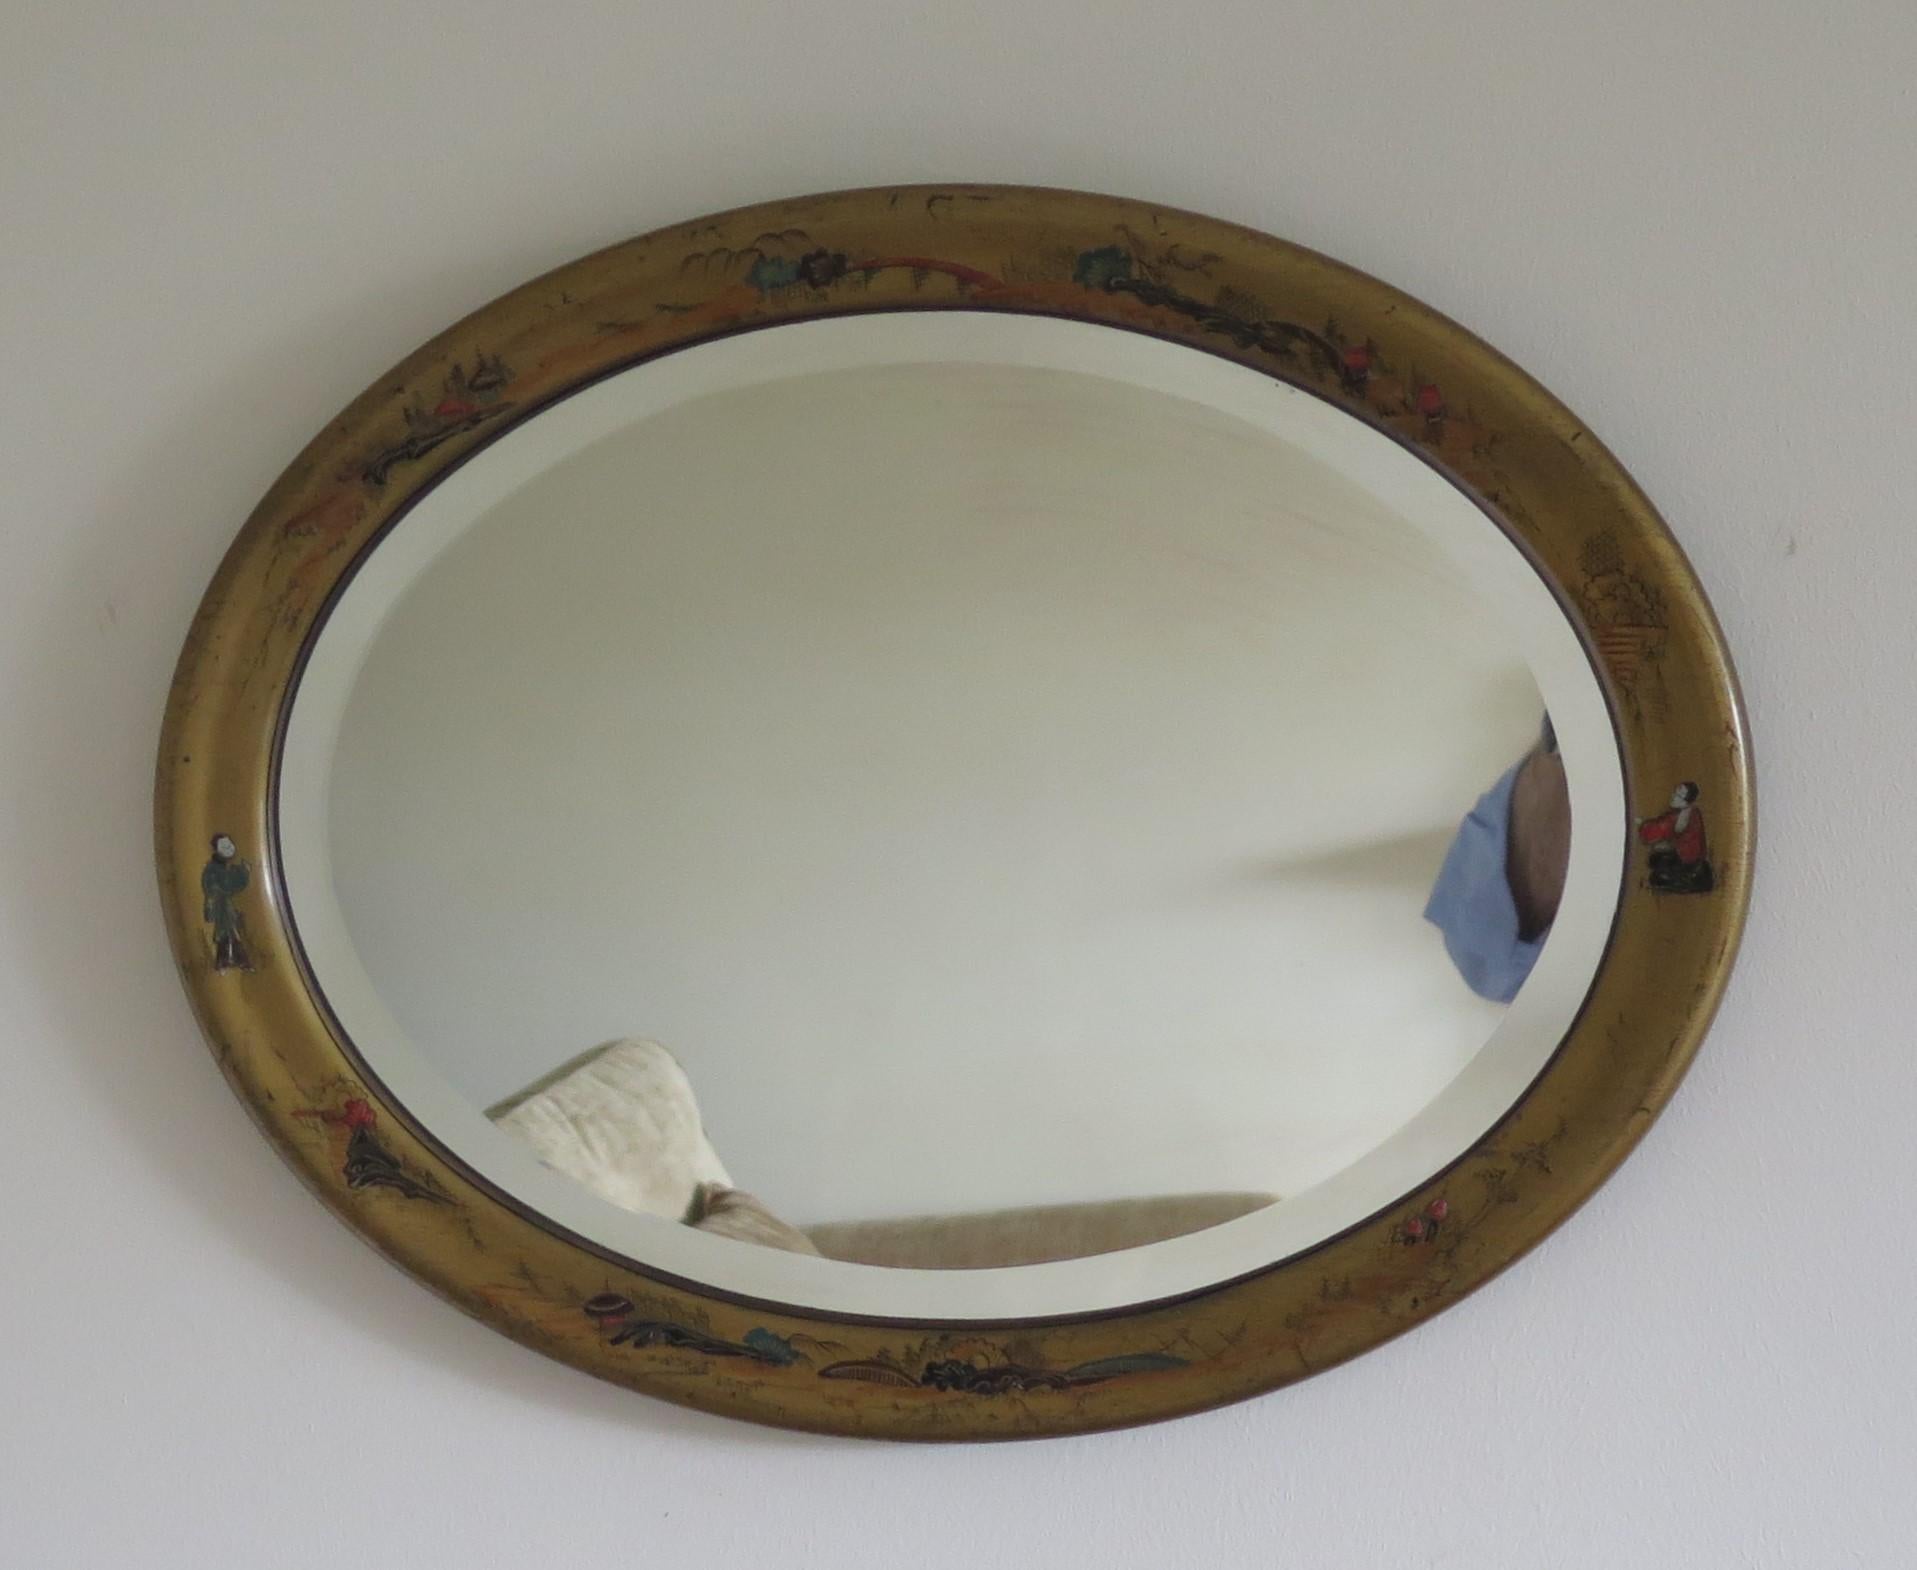 Il s'agit d'un très bon miroir mural de forme ovale avec une décoration chinoise moulée et peinte à la main sur le cadre, avec un miroir biseauté, datant du début du 19ème siècle, vers 1900.

Le cadre ovale a une finition en bois doré avec des